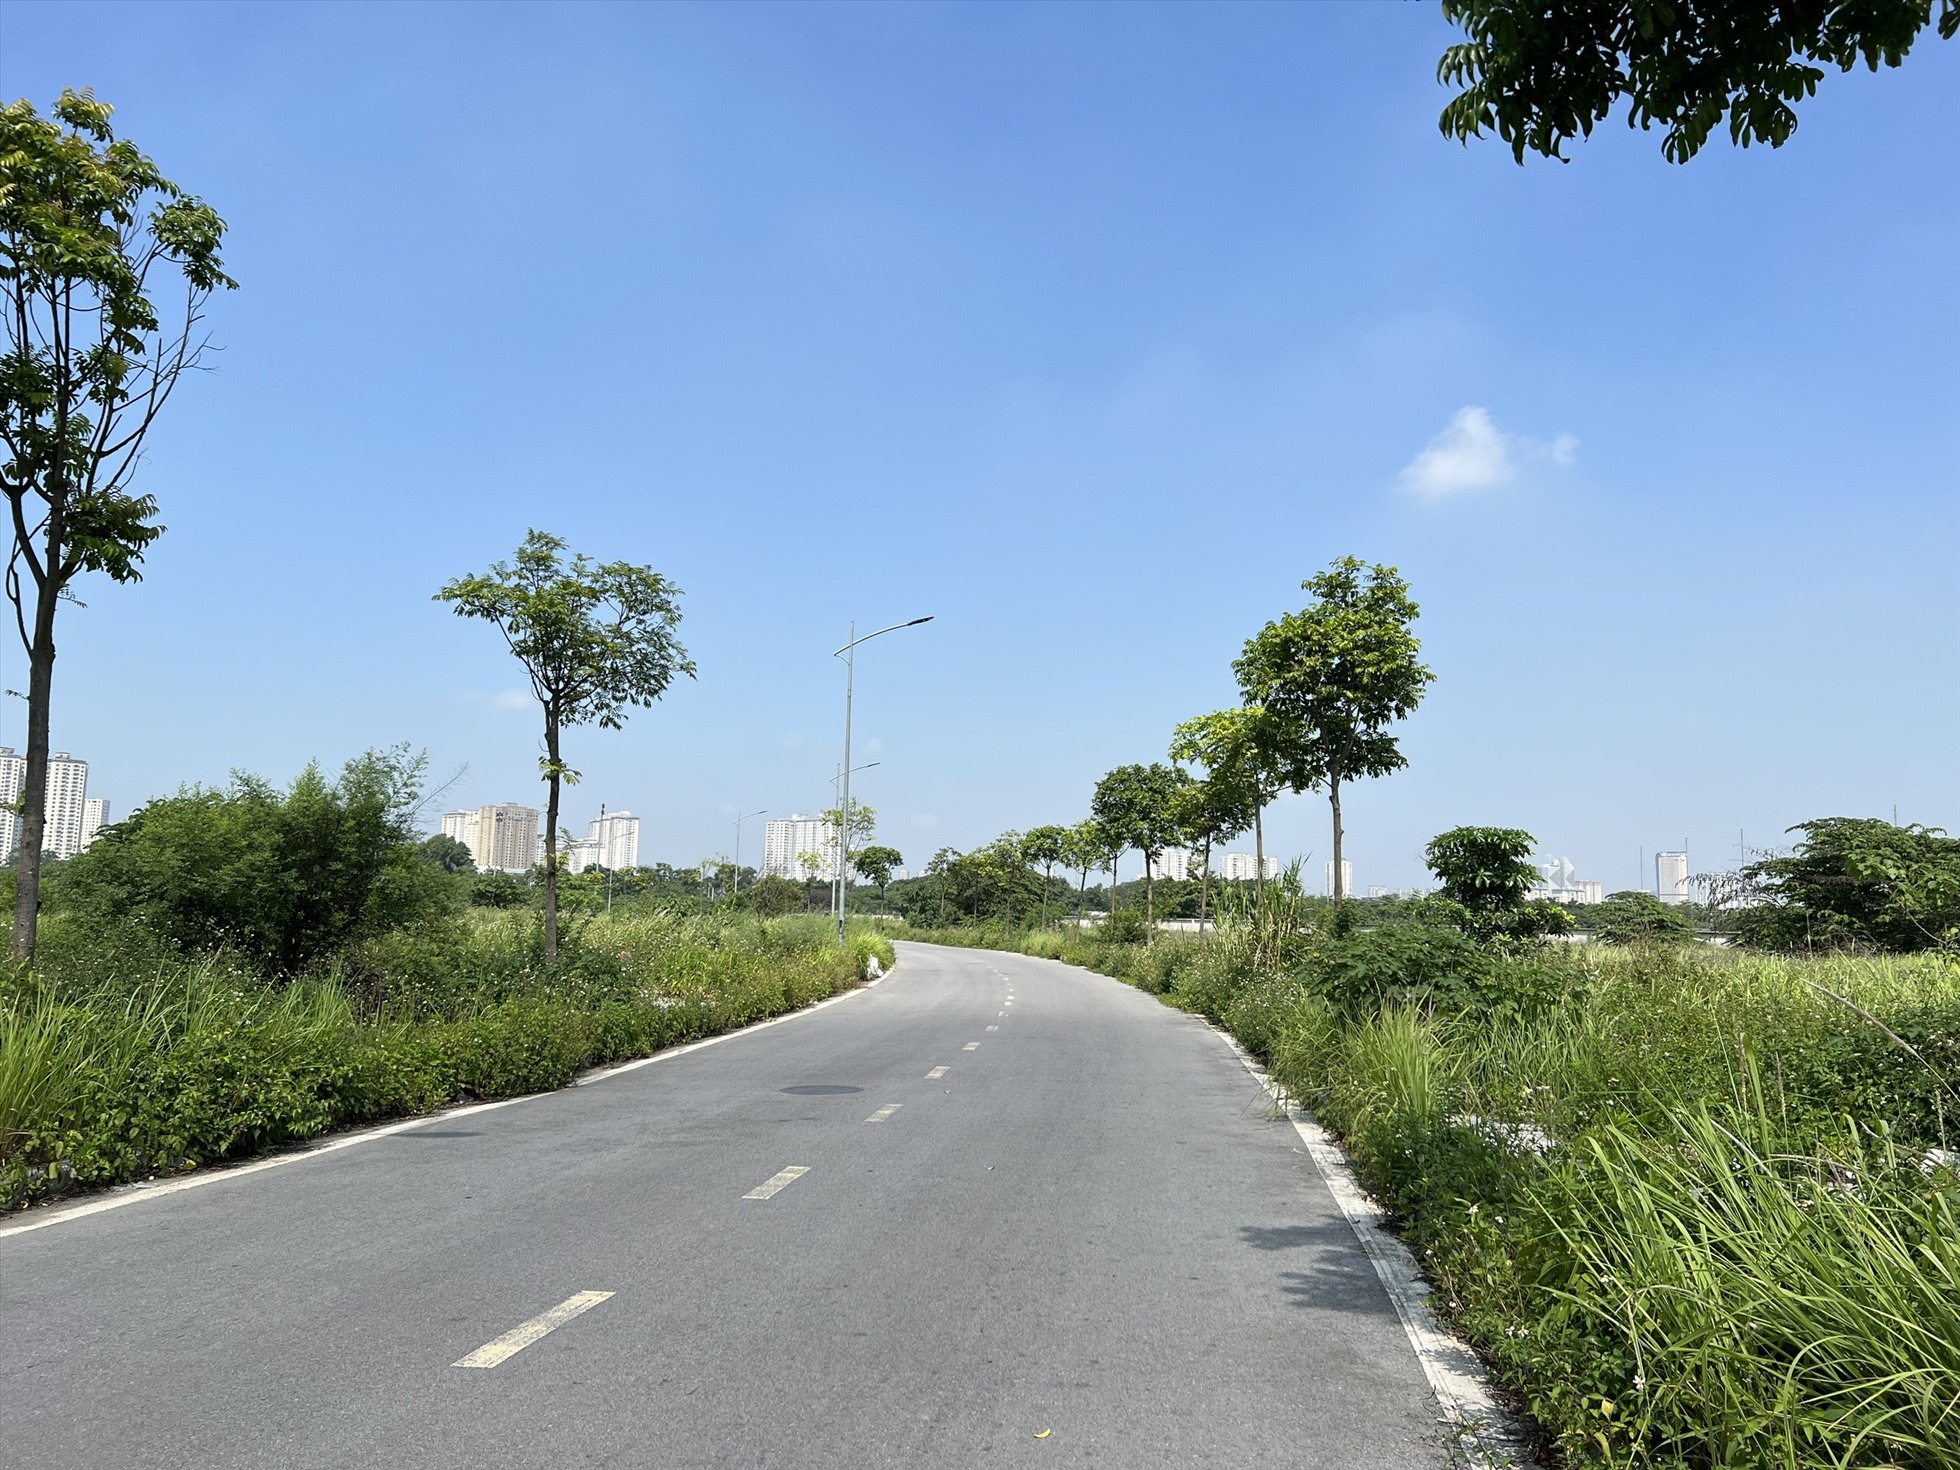 Công viên Chu Văn An hiện chỉ mới được hoàn thiện một phần đường nội bộ. Ảnh: Nguyễn Thúy